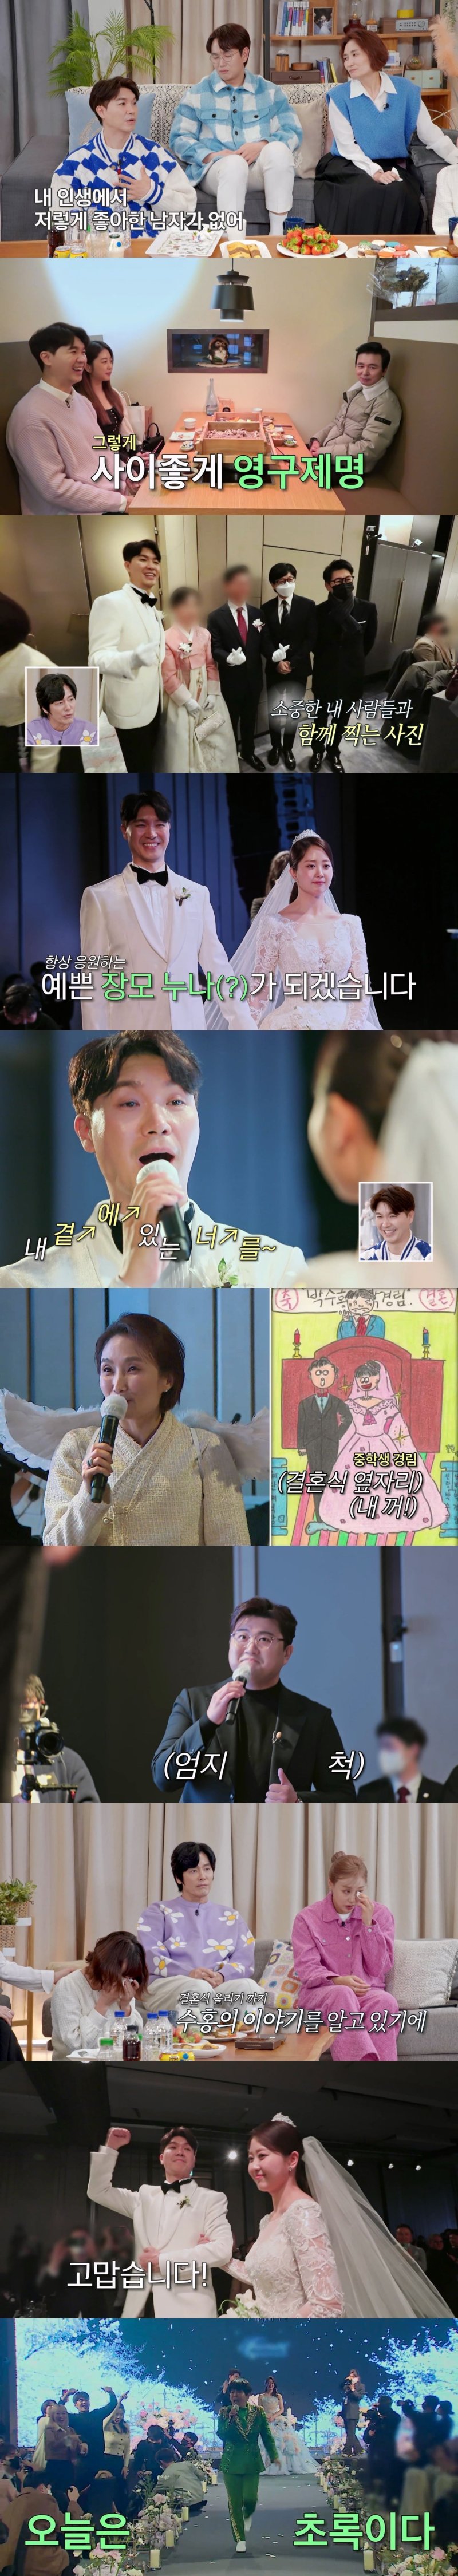 박수홍, 결혼식서 오열 "부모·형제 버린 놈이 돈벌이? 가족·행복 지키려 하는것"